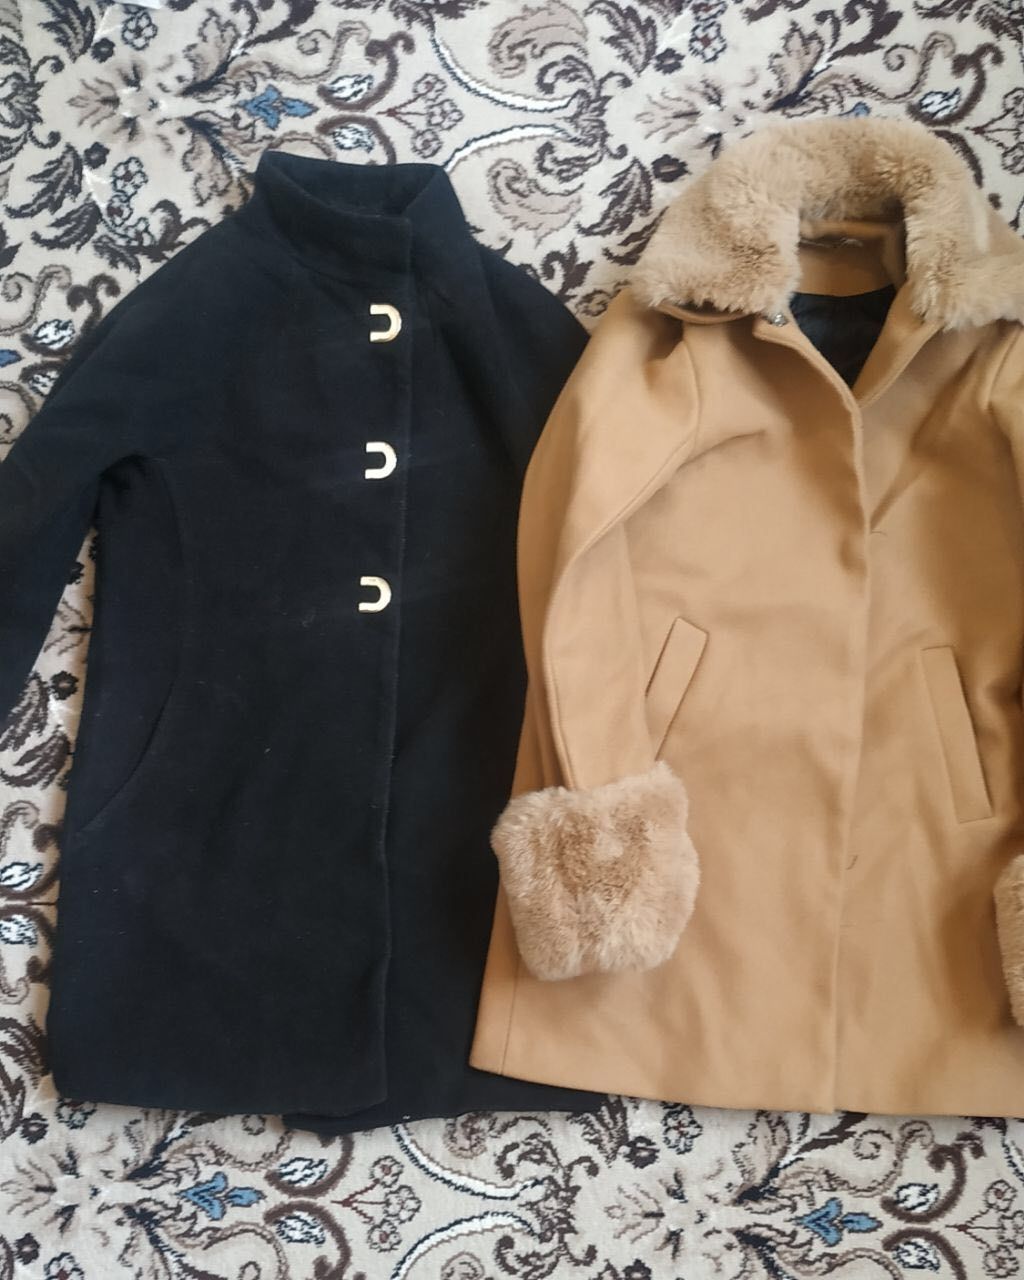 Куртки, польта, дубленка для взрослых и детей